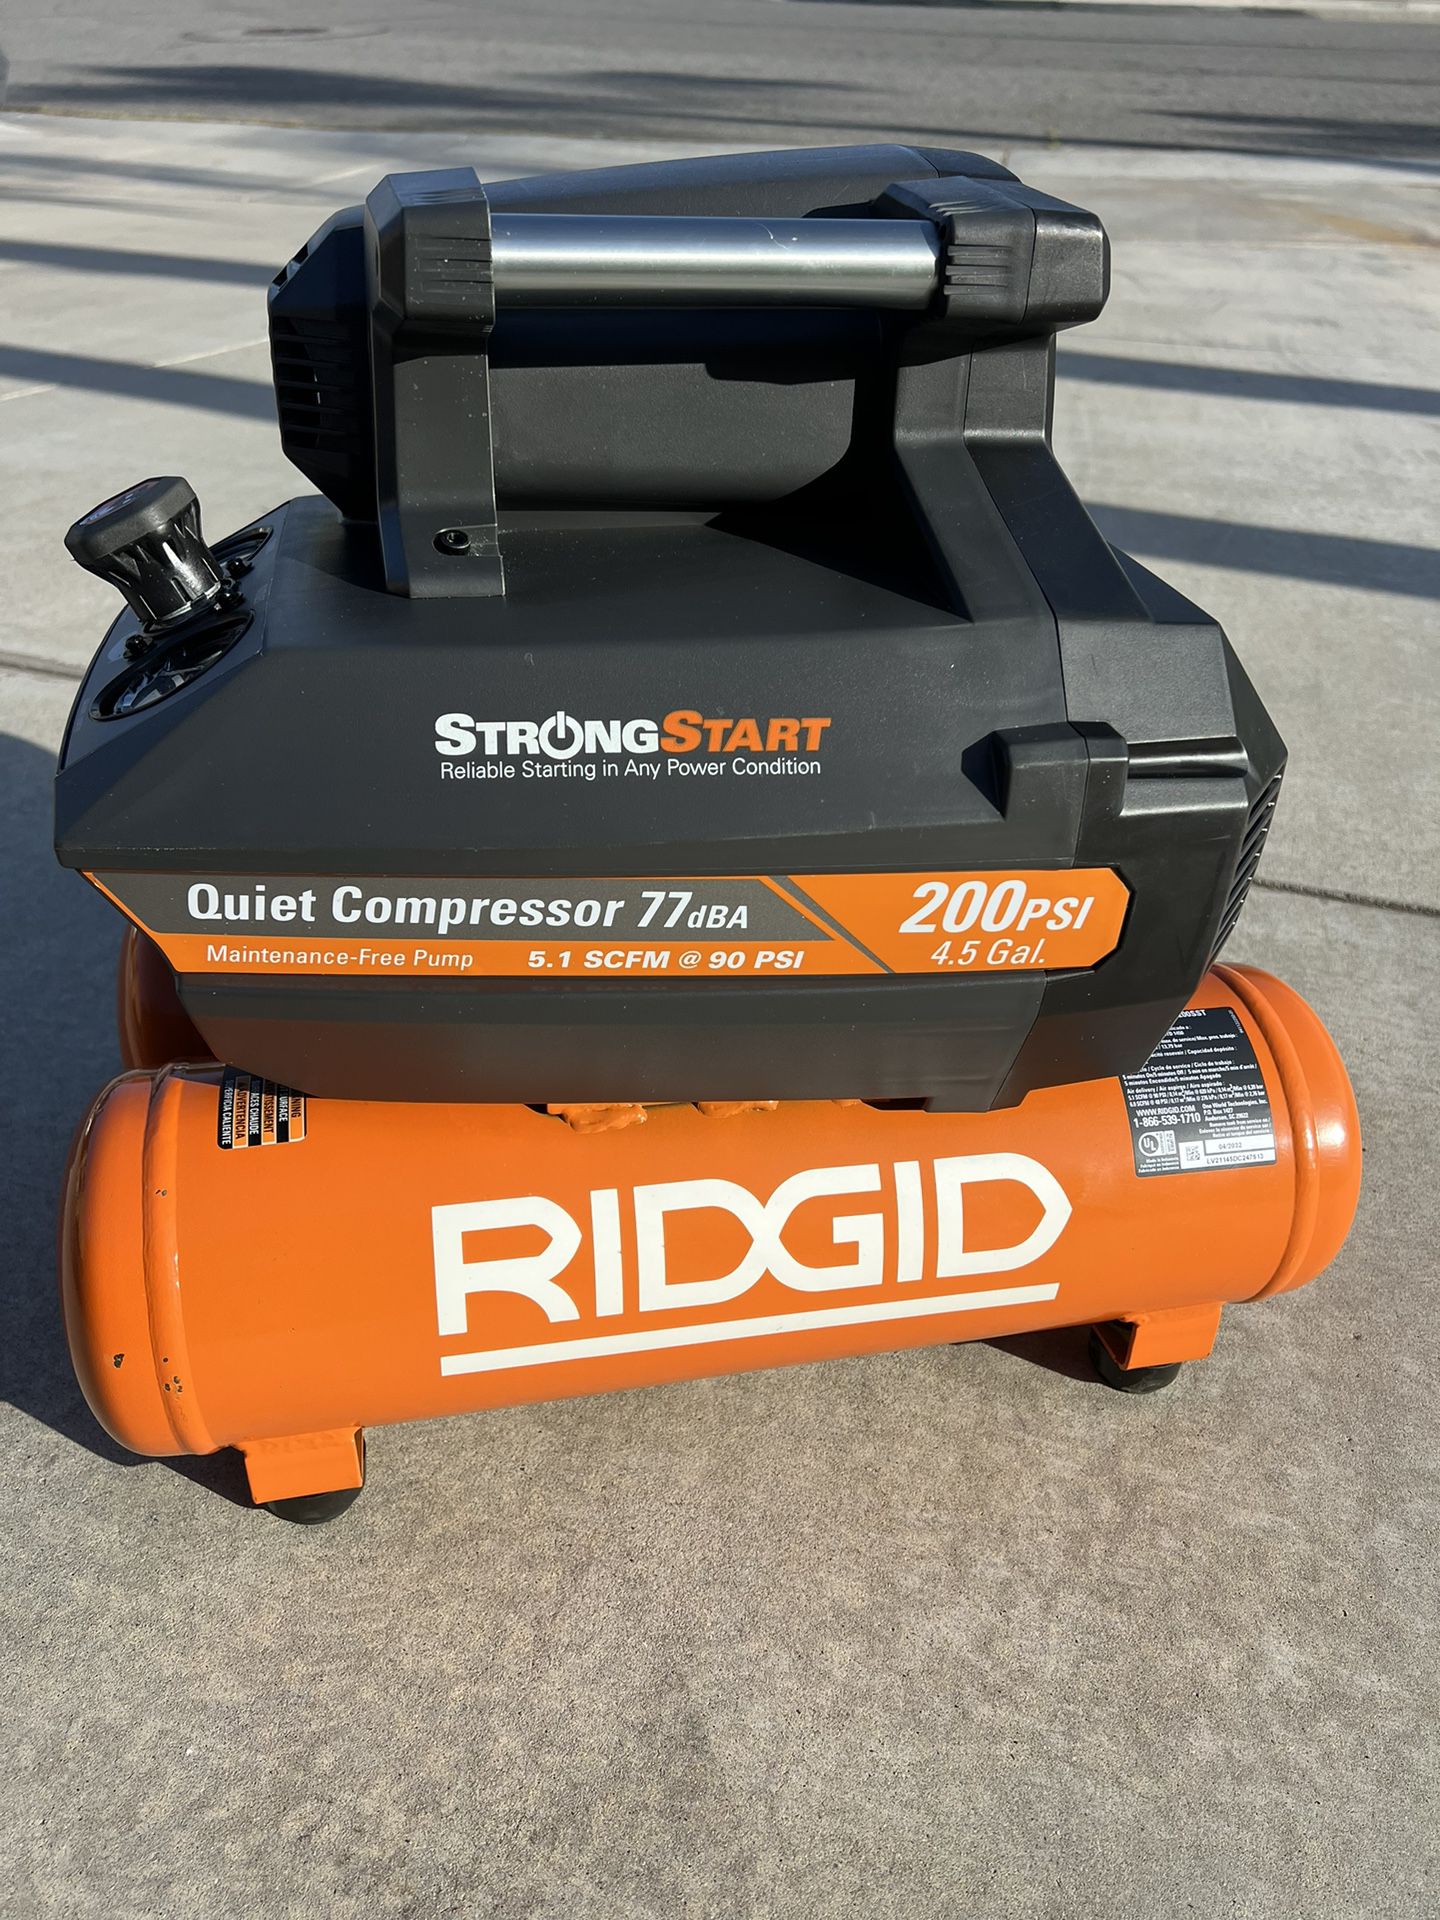 RIGID Air Compressor 200 psi 4.5 Gal. Electric Quiet Compressor OF45200SST